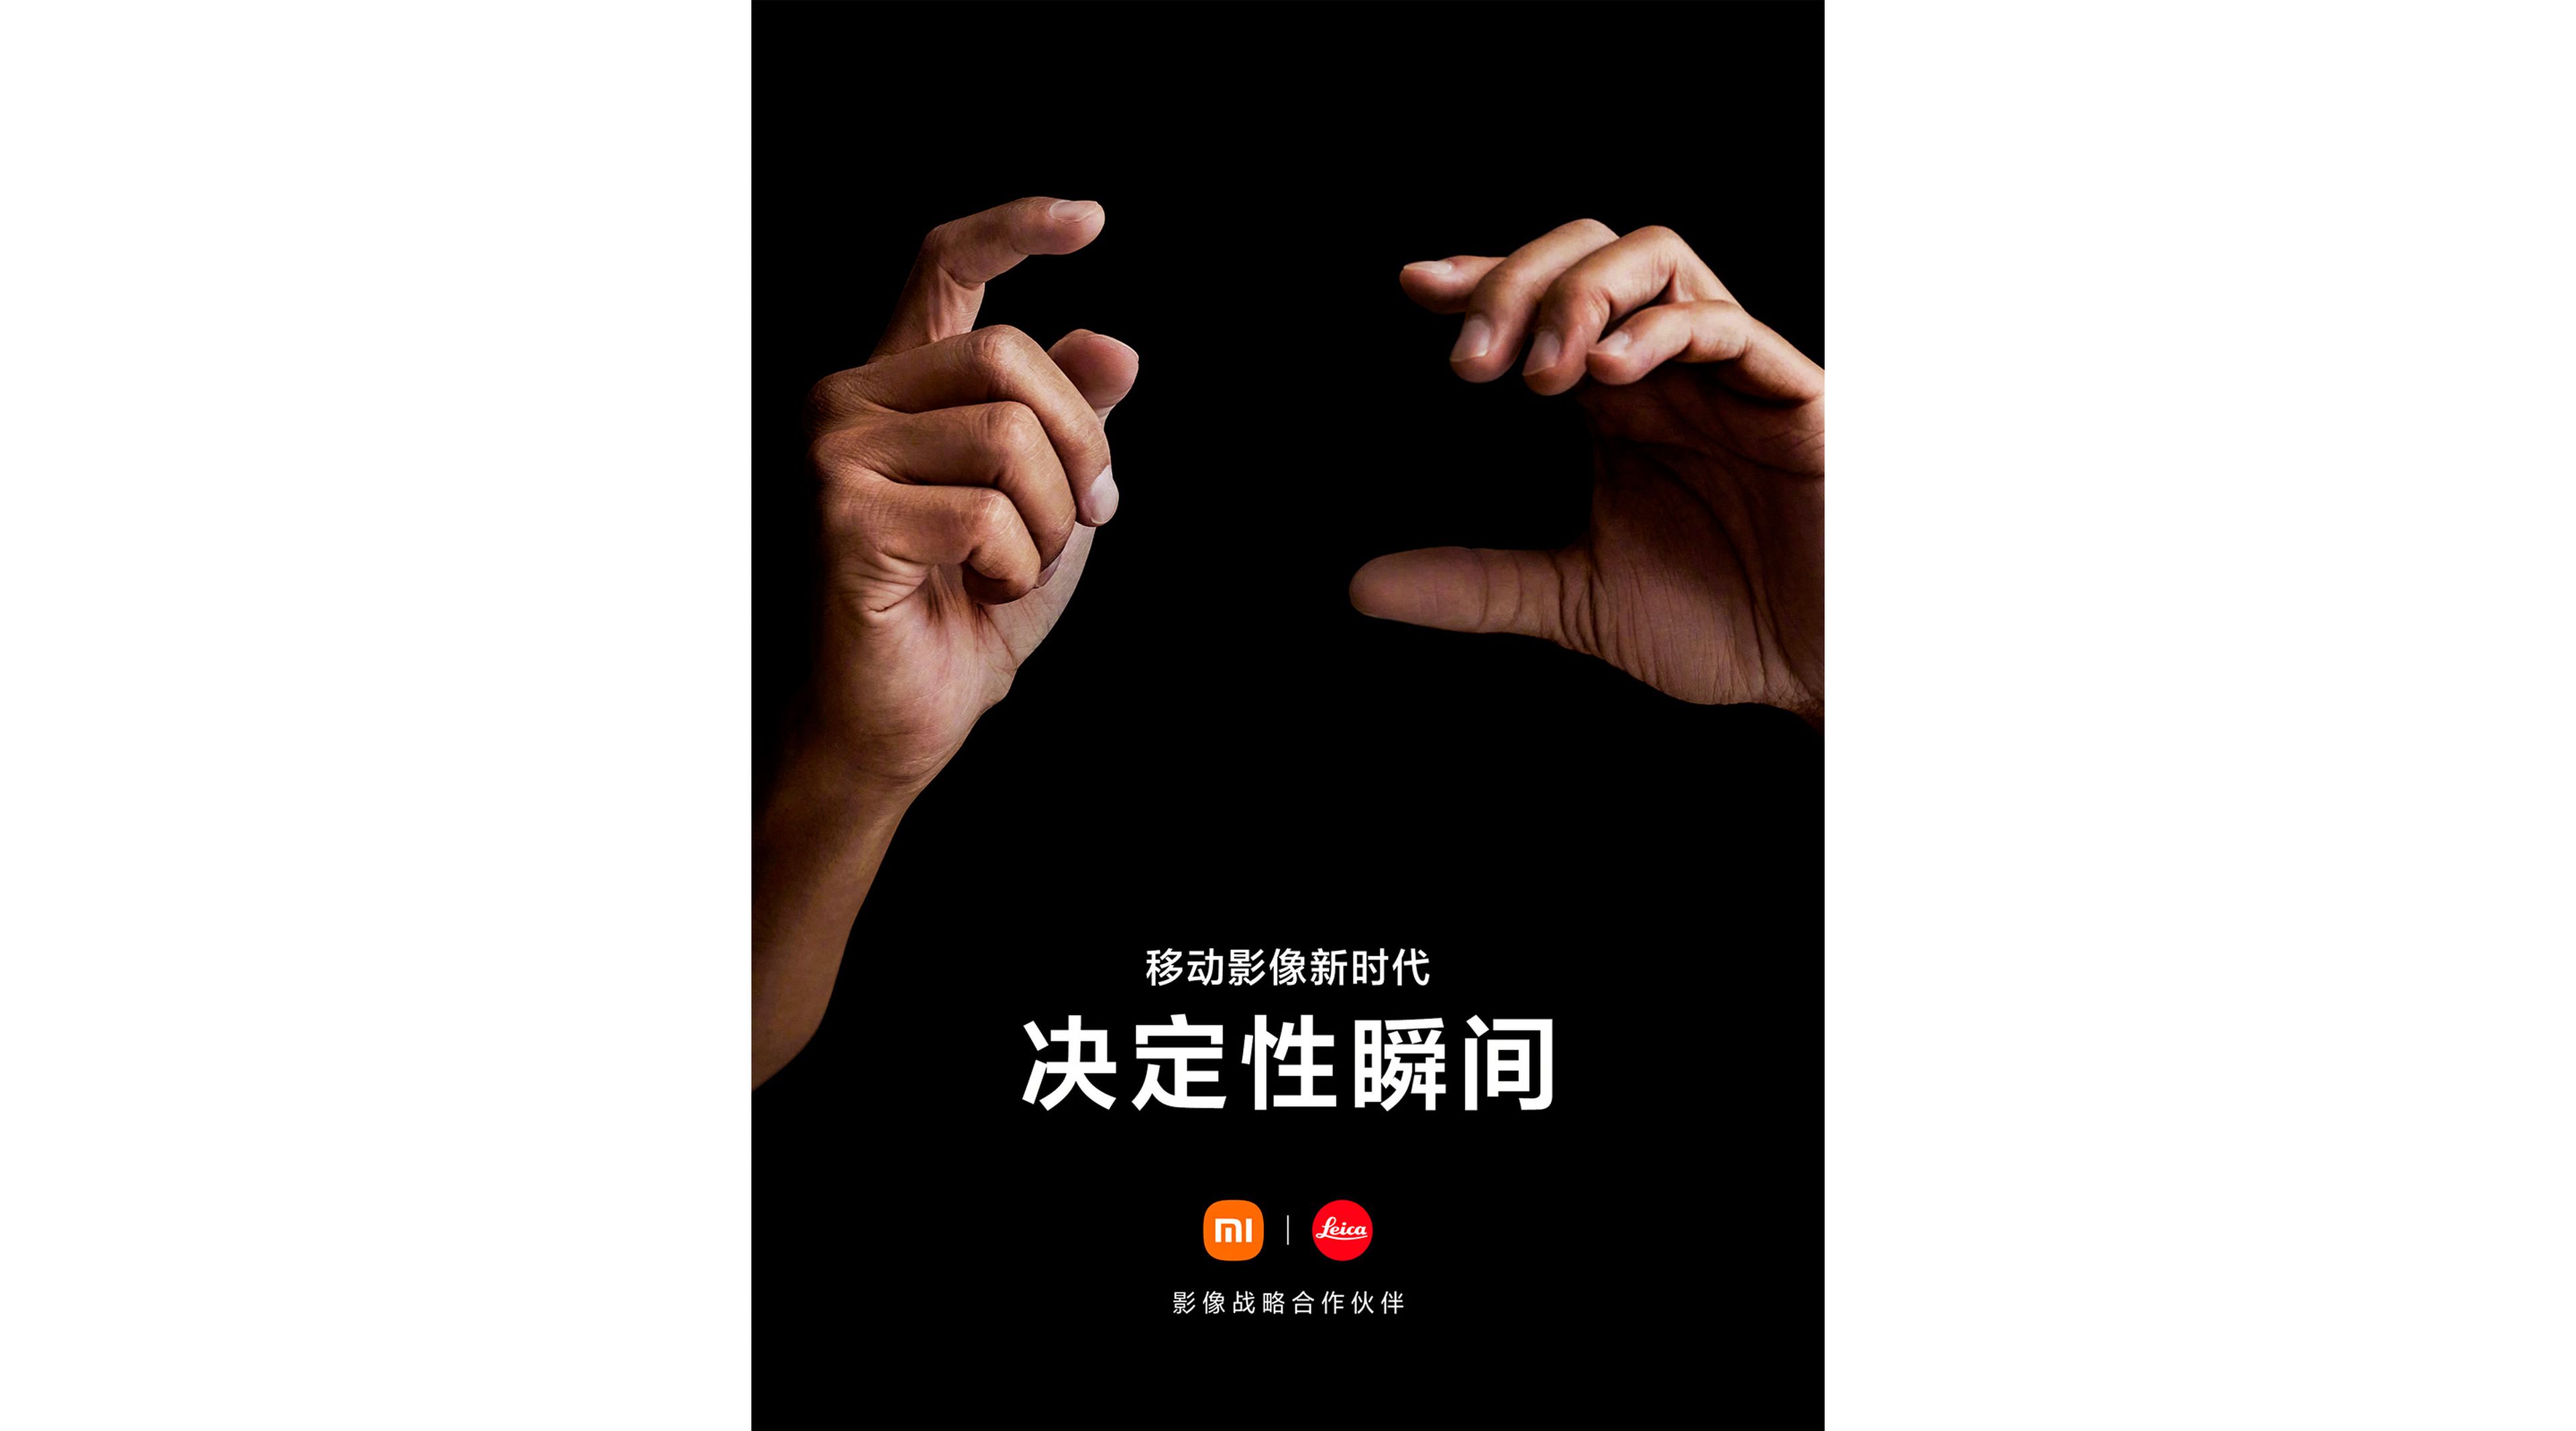 Imagen promocional Xiaomi x Leica